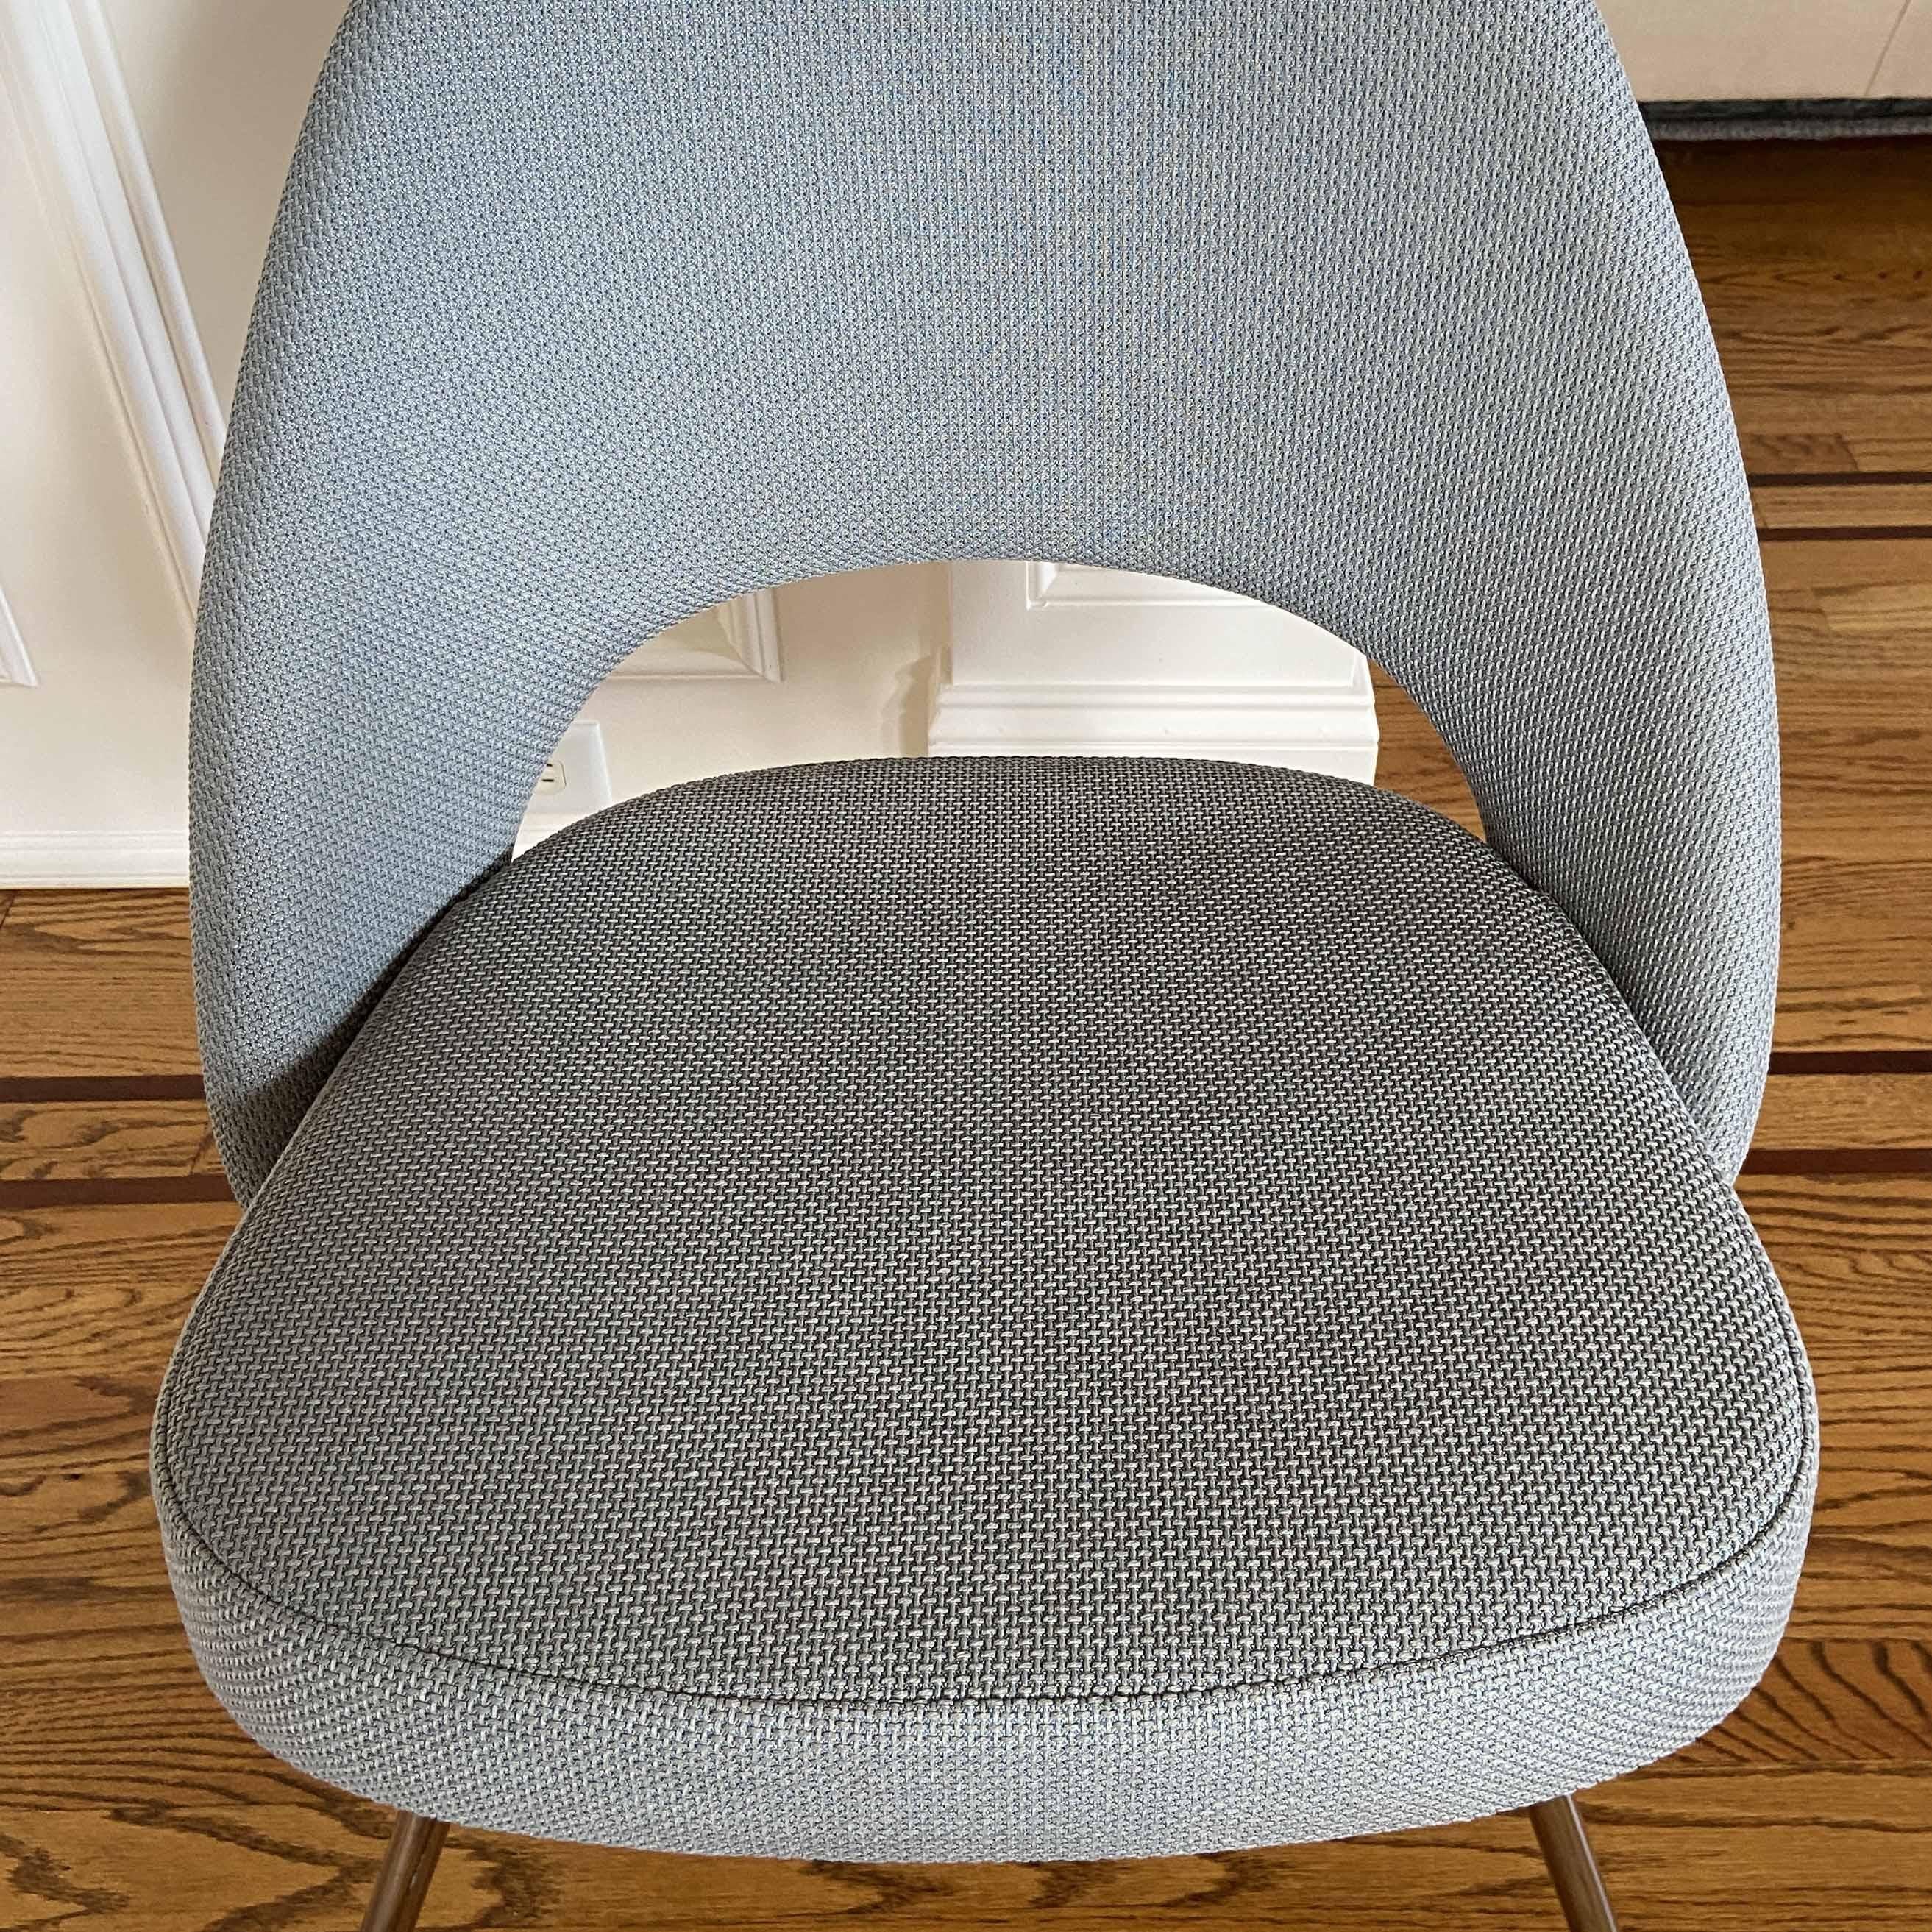 North American Saarinen Executive Armless Chair in Gray Fabric, Chrome Tubular Legs